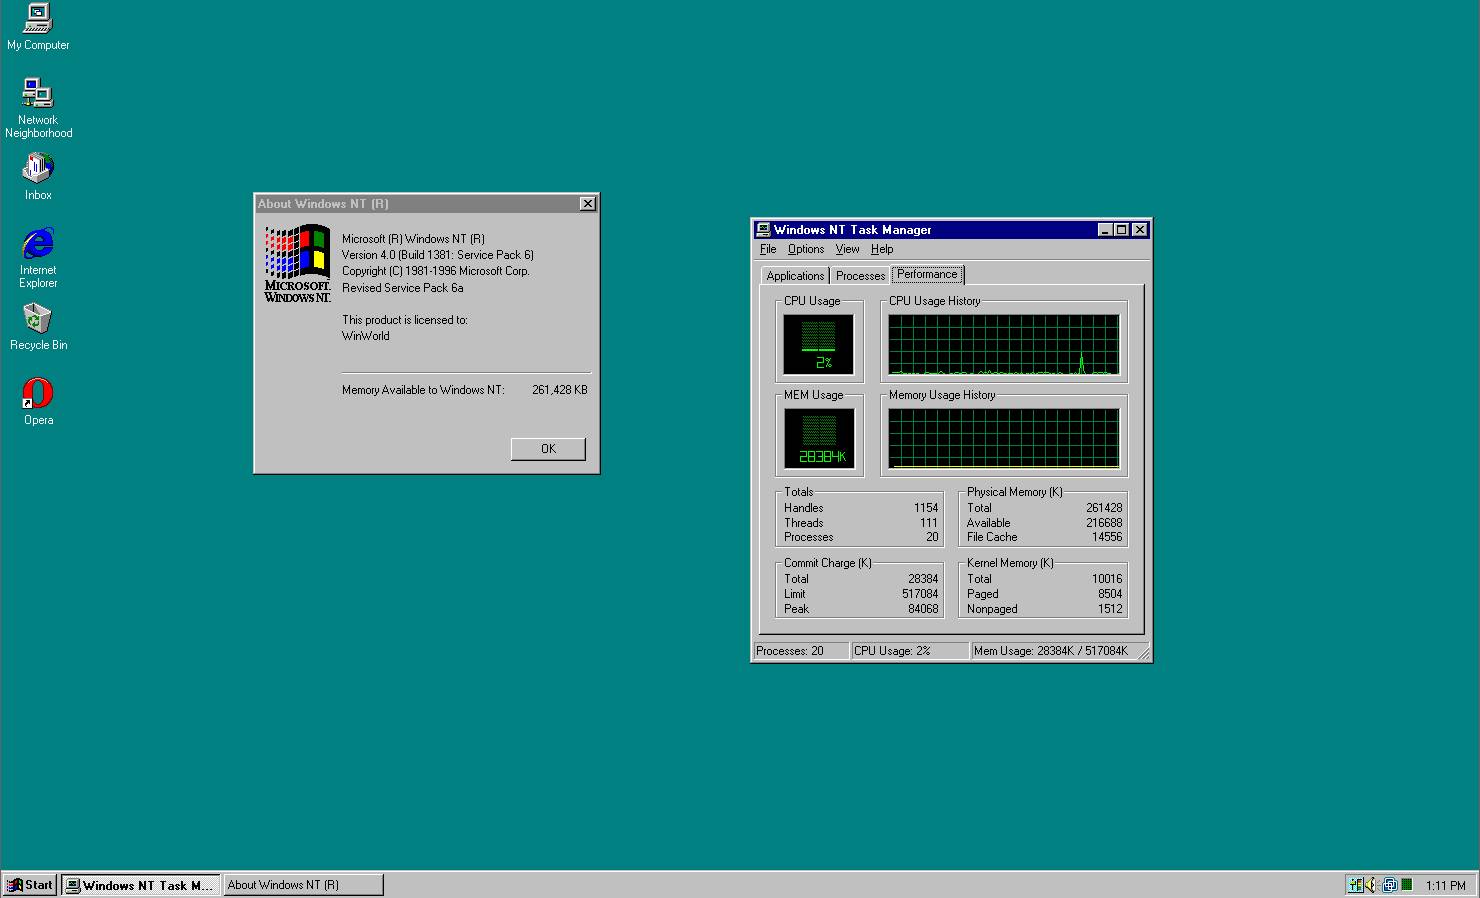 Pulpit systemu Windows NT 4.0. Nowa funkcja w tym systemie- Menadżer zadań.